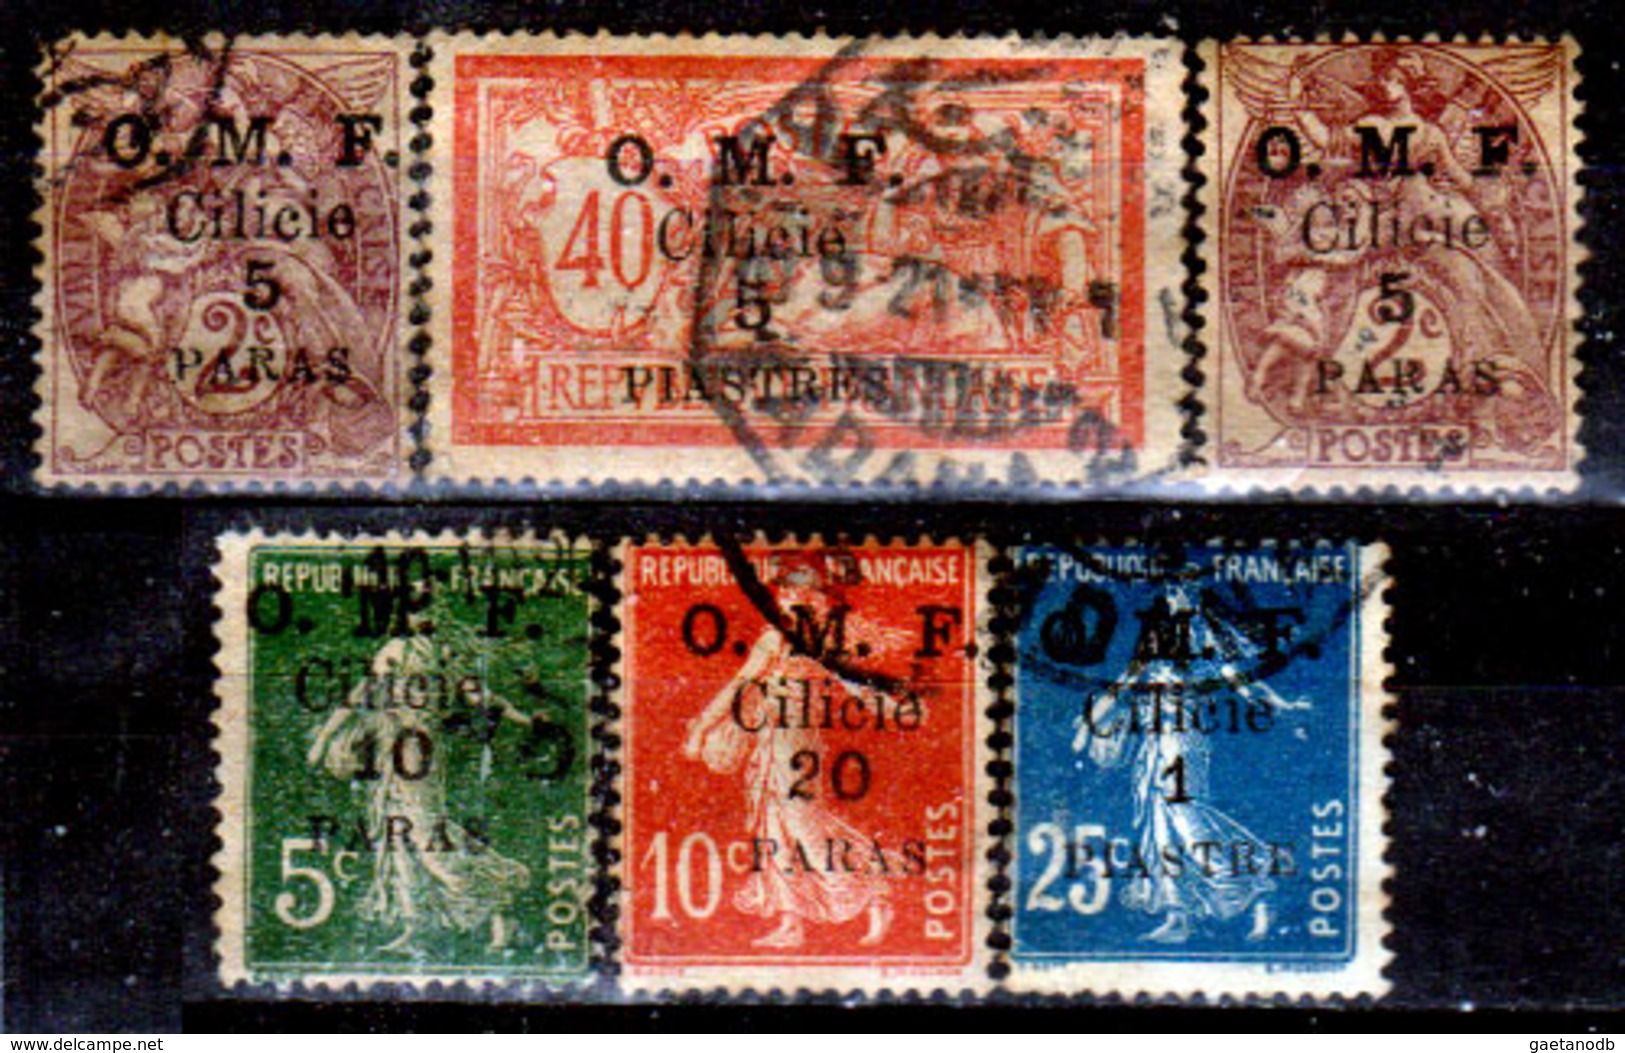 Cilicia-011 - Emissione 1920 (o) Used - Senza Difetti Occulti. - Used Stamps